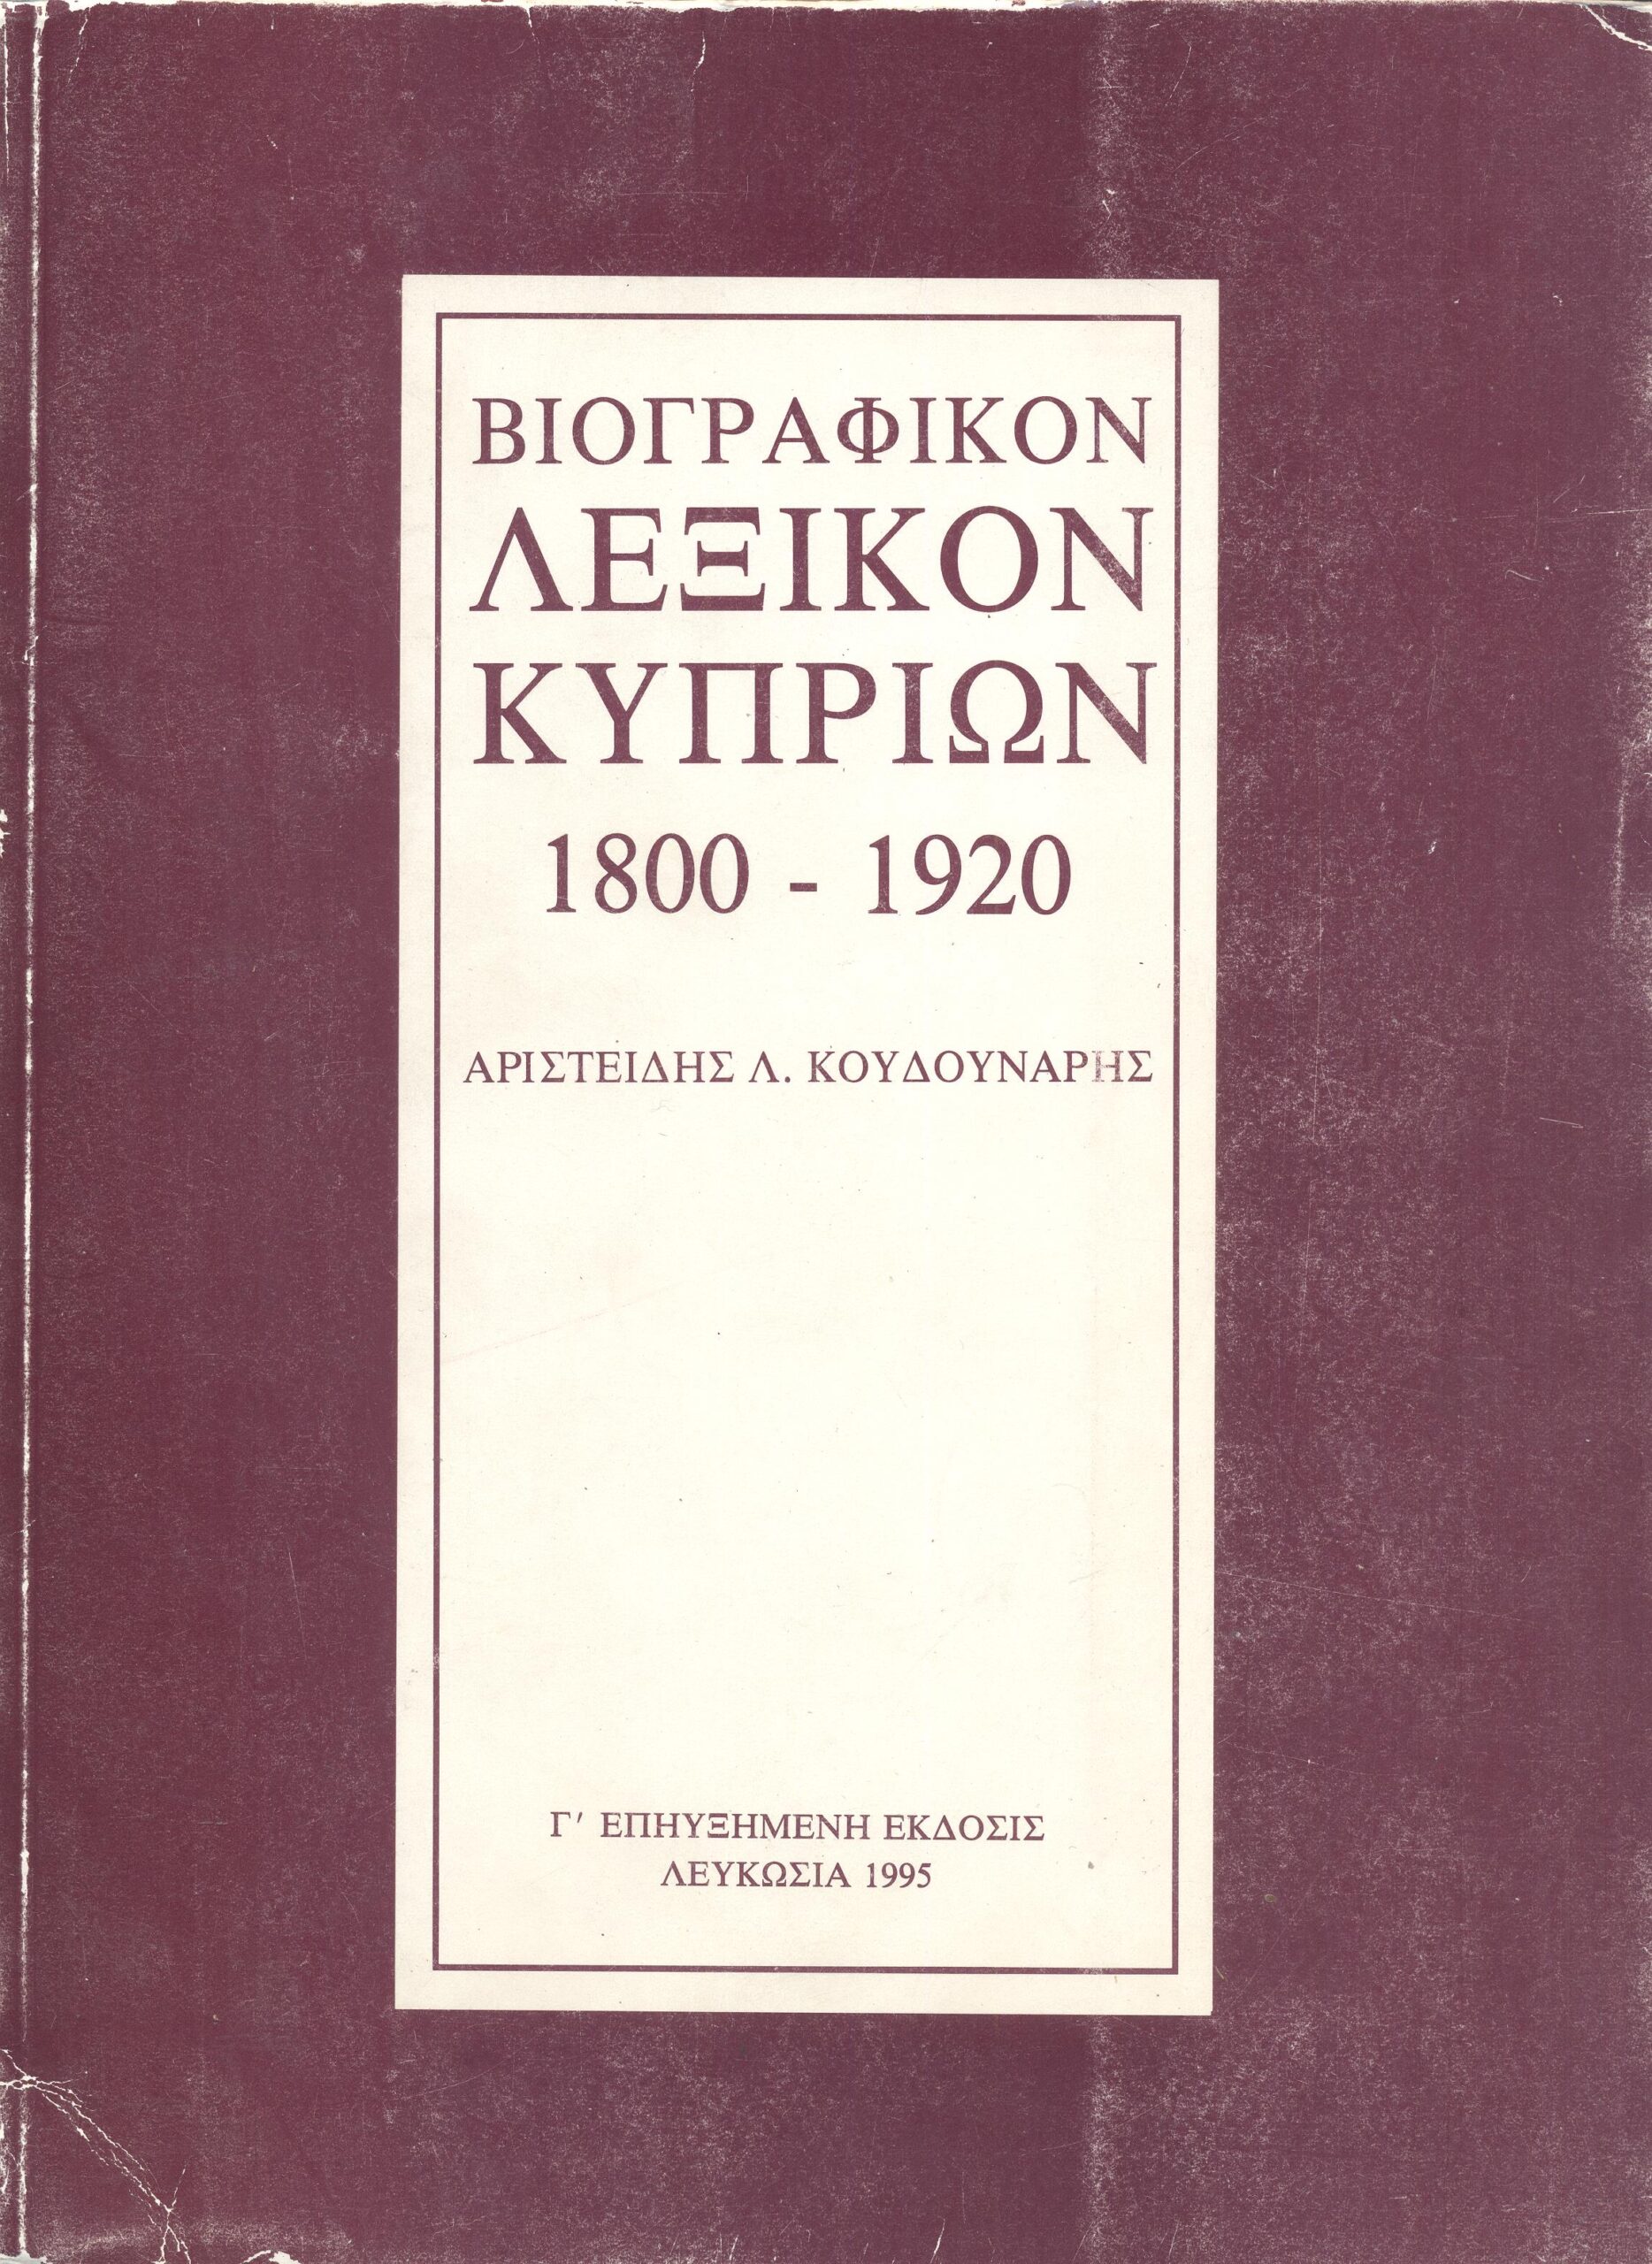 Βιογραφικόν Λεξικόν Κυπρίων 1800 - 1920 (3η έκδοση με υπογραφή απο τον συγγραφέα)